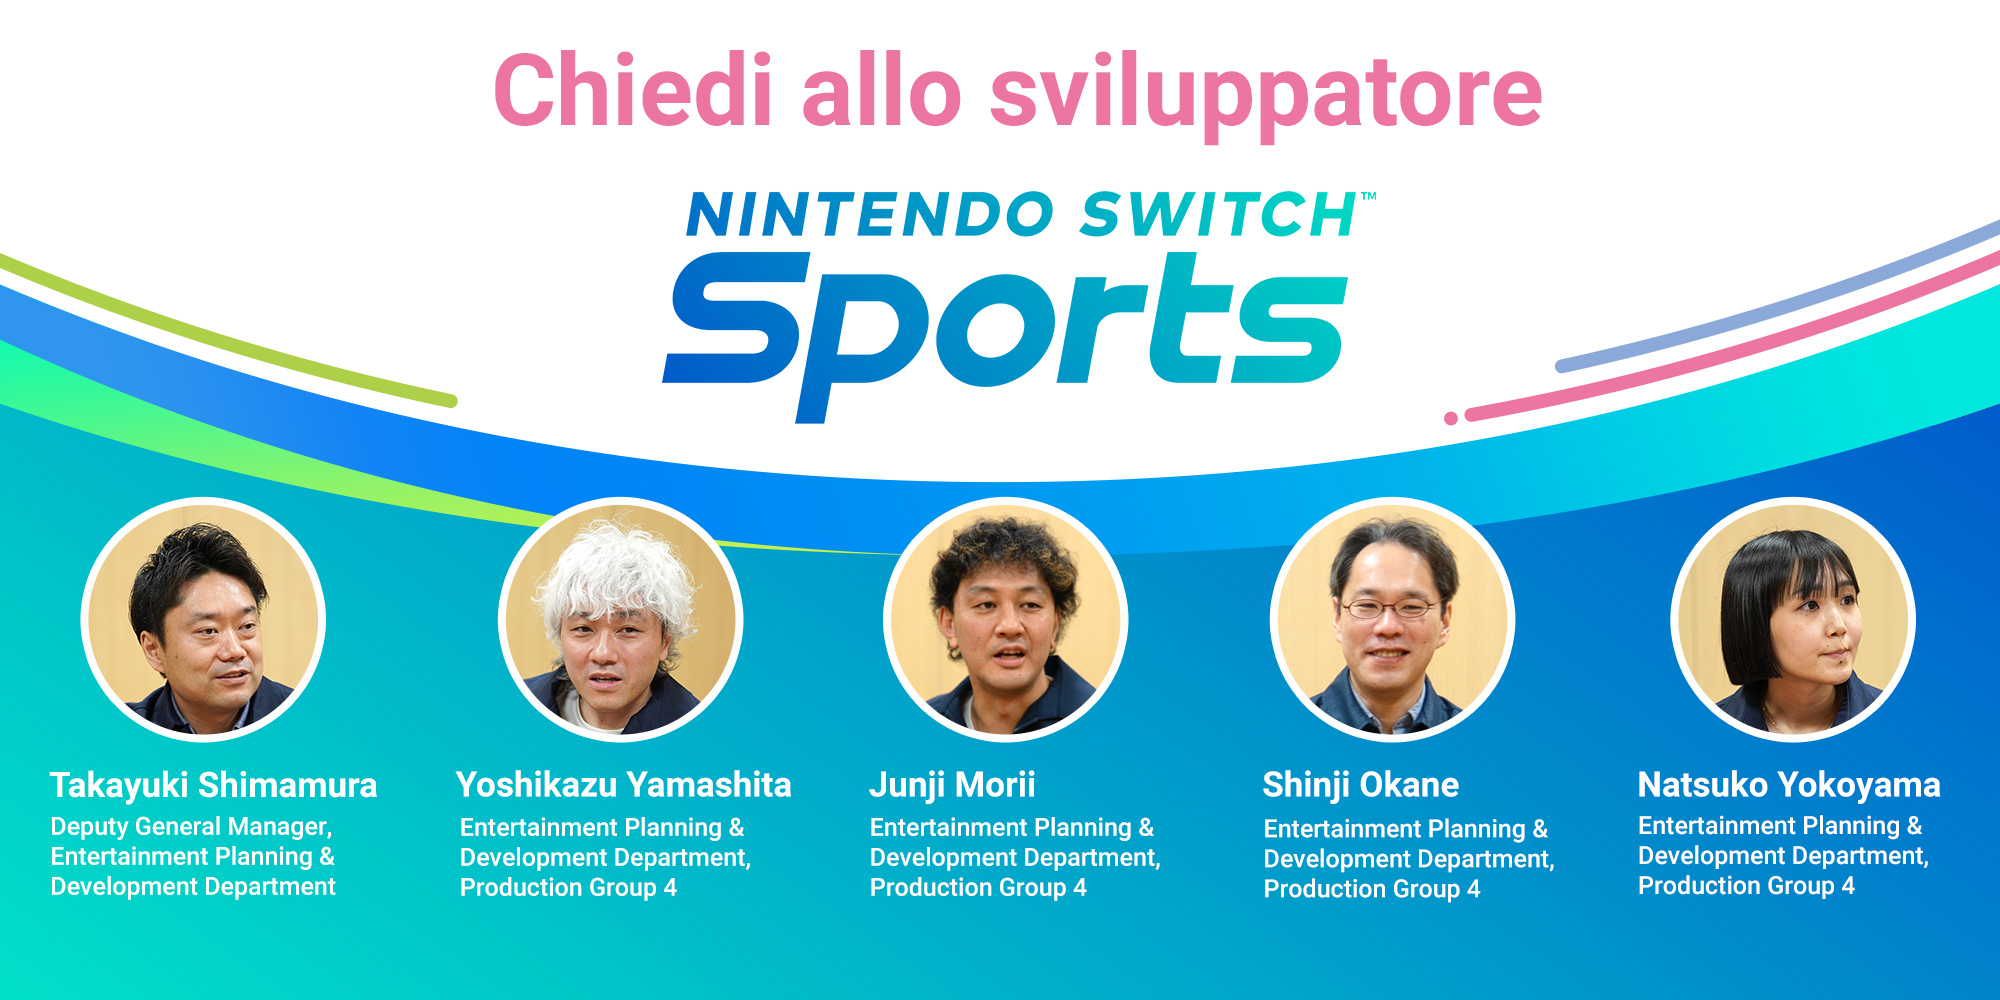 Chiedi allo sviluppatore, parte 5: Nintendo Switch Sports